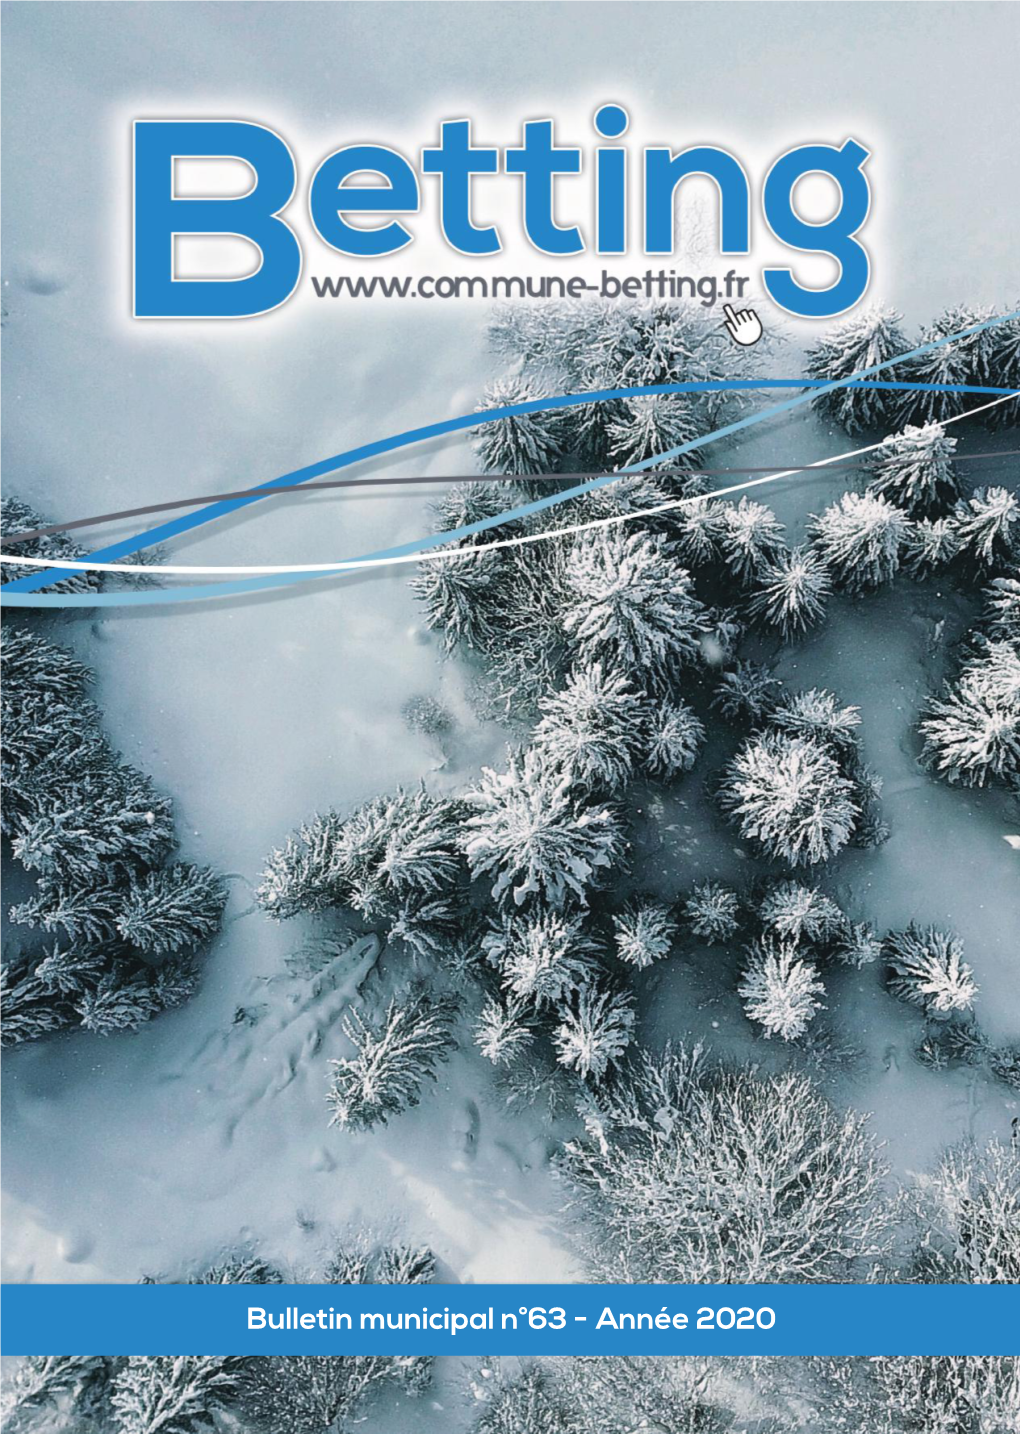 Bulletin Municipal Betting 12-2020 V11 BAT 3.Indd